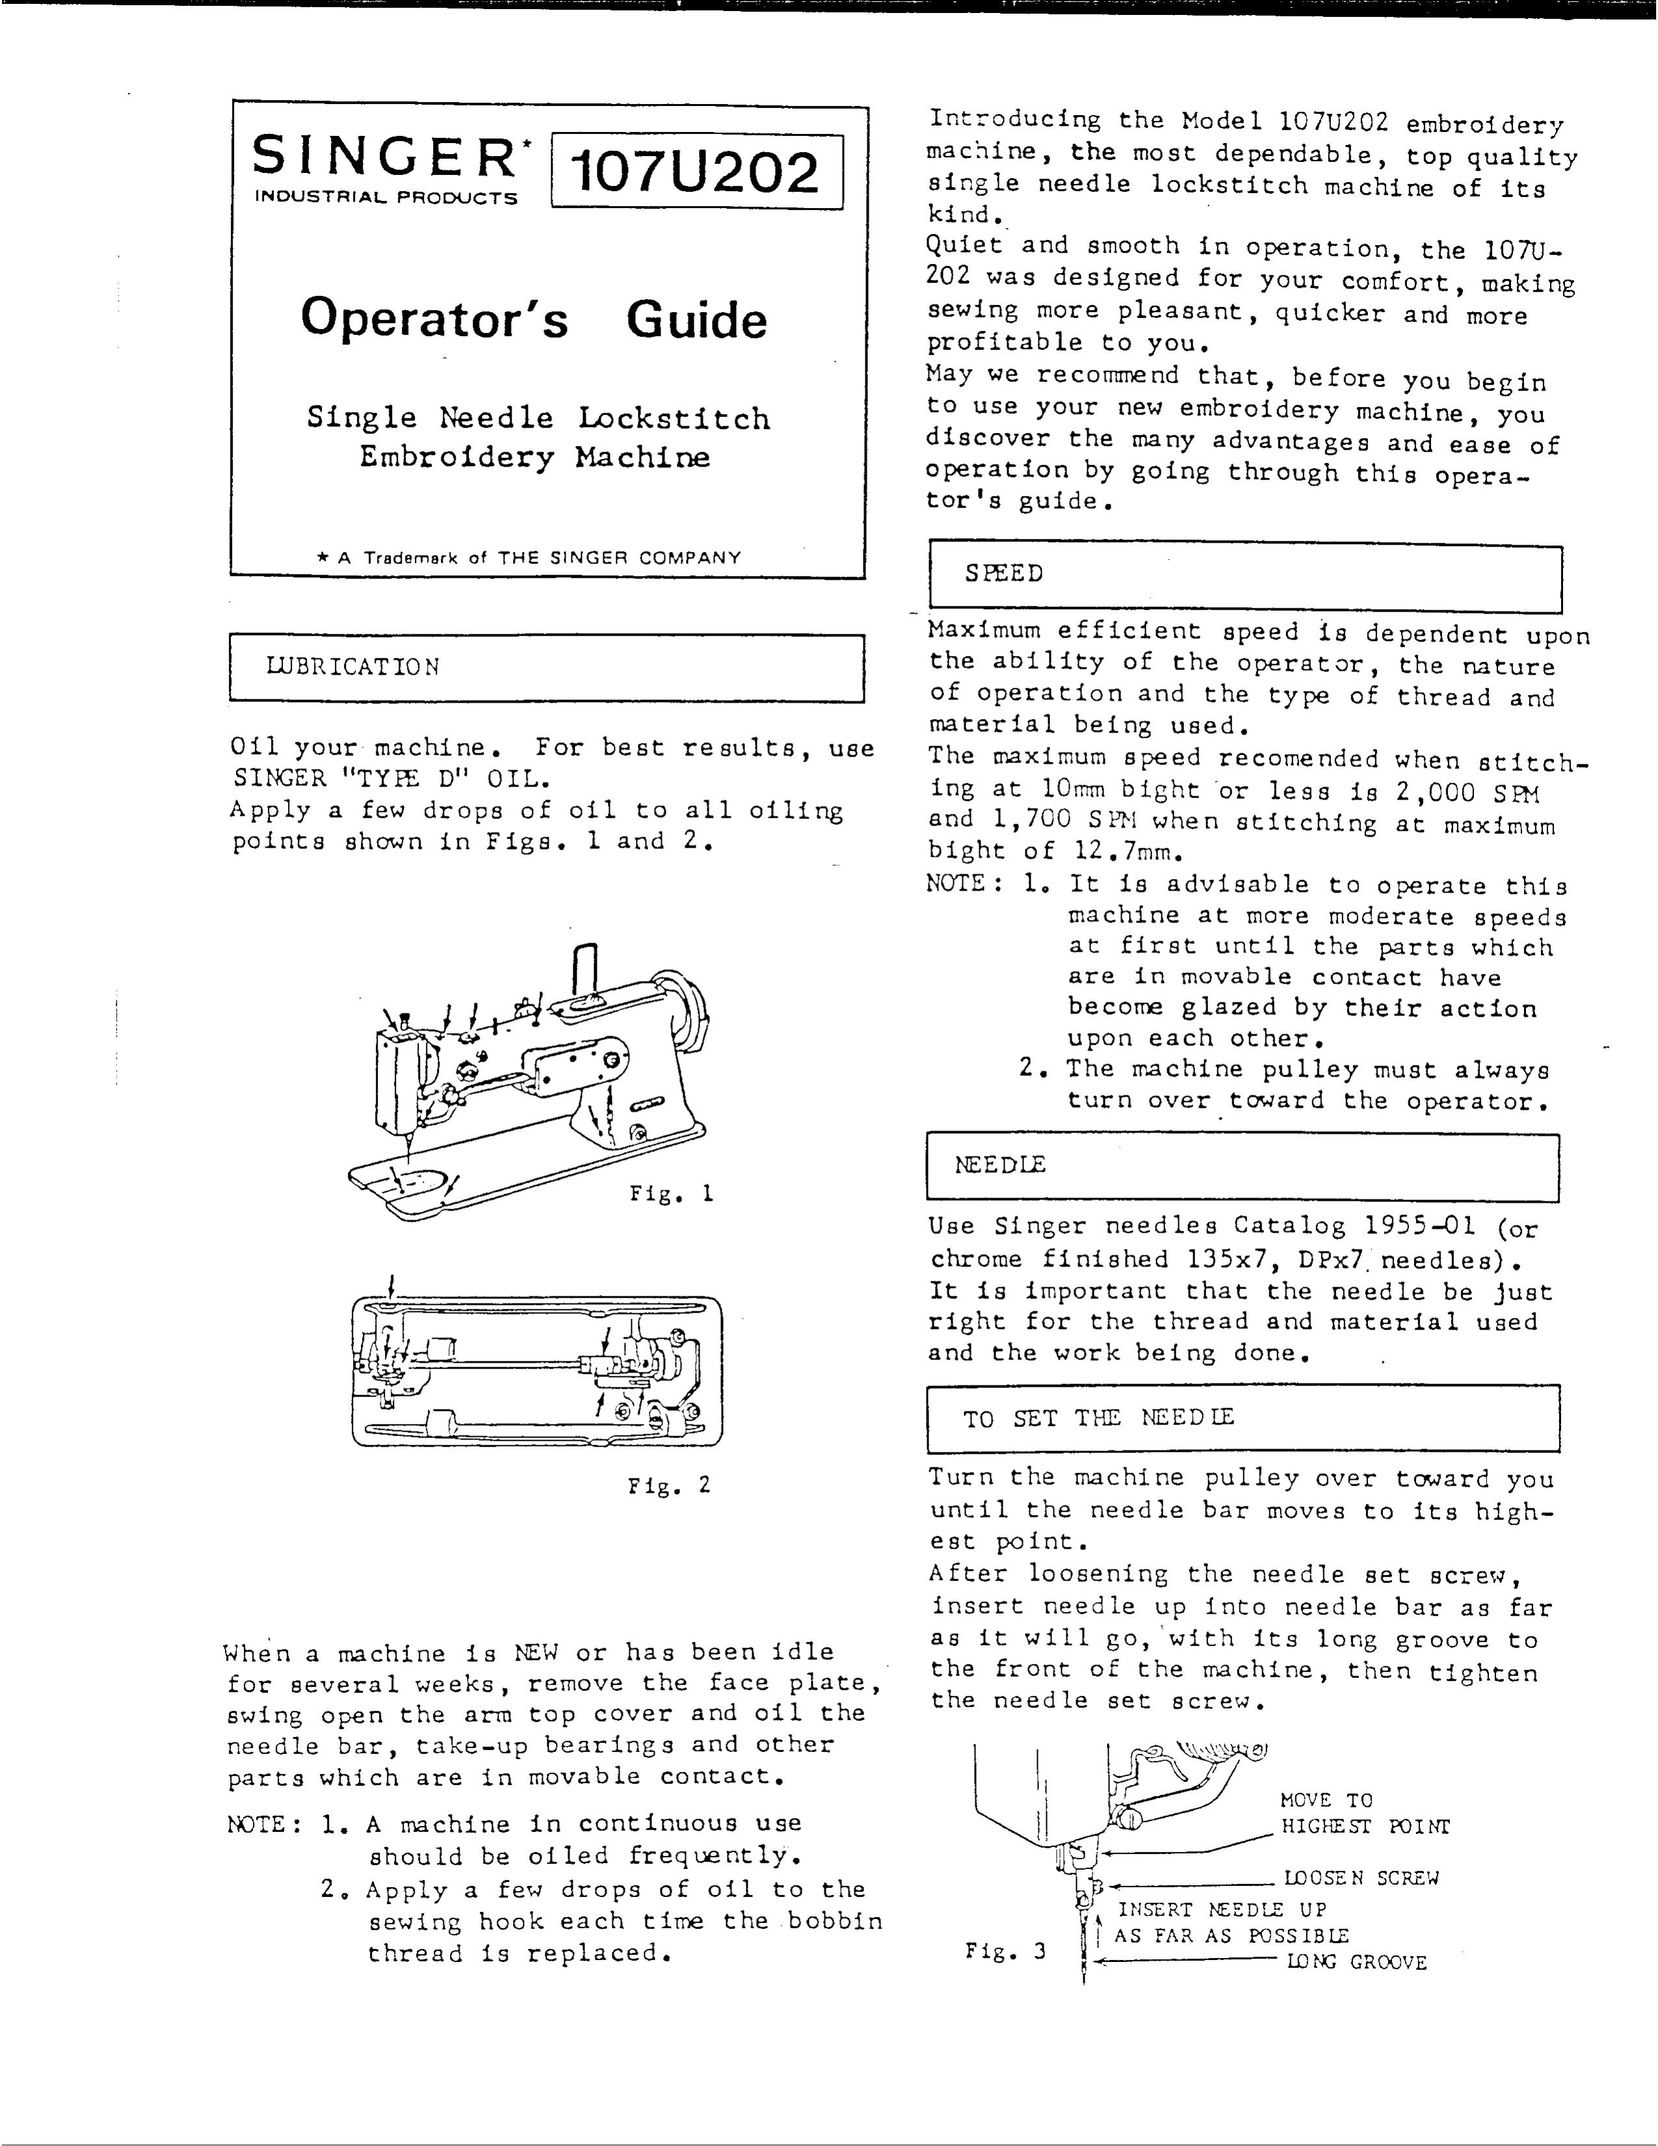 Singer 107U202 Sewing Machine User Manual